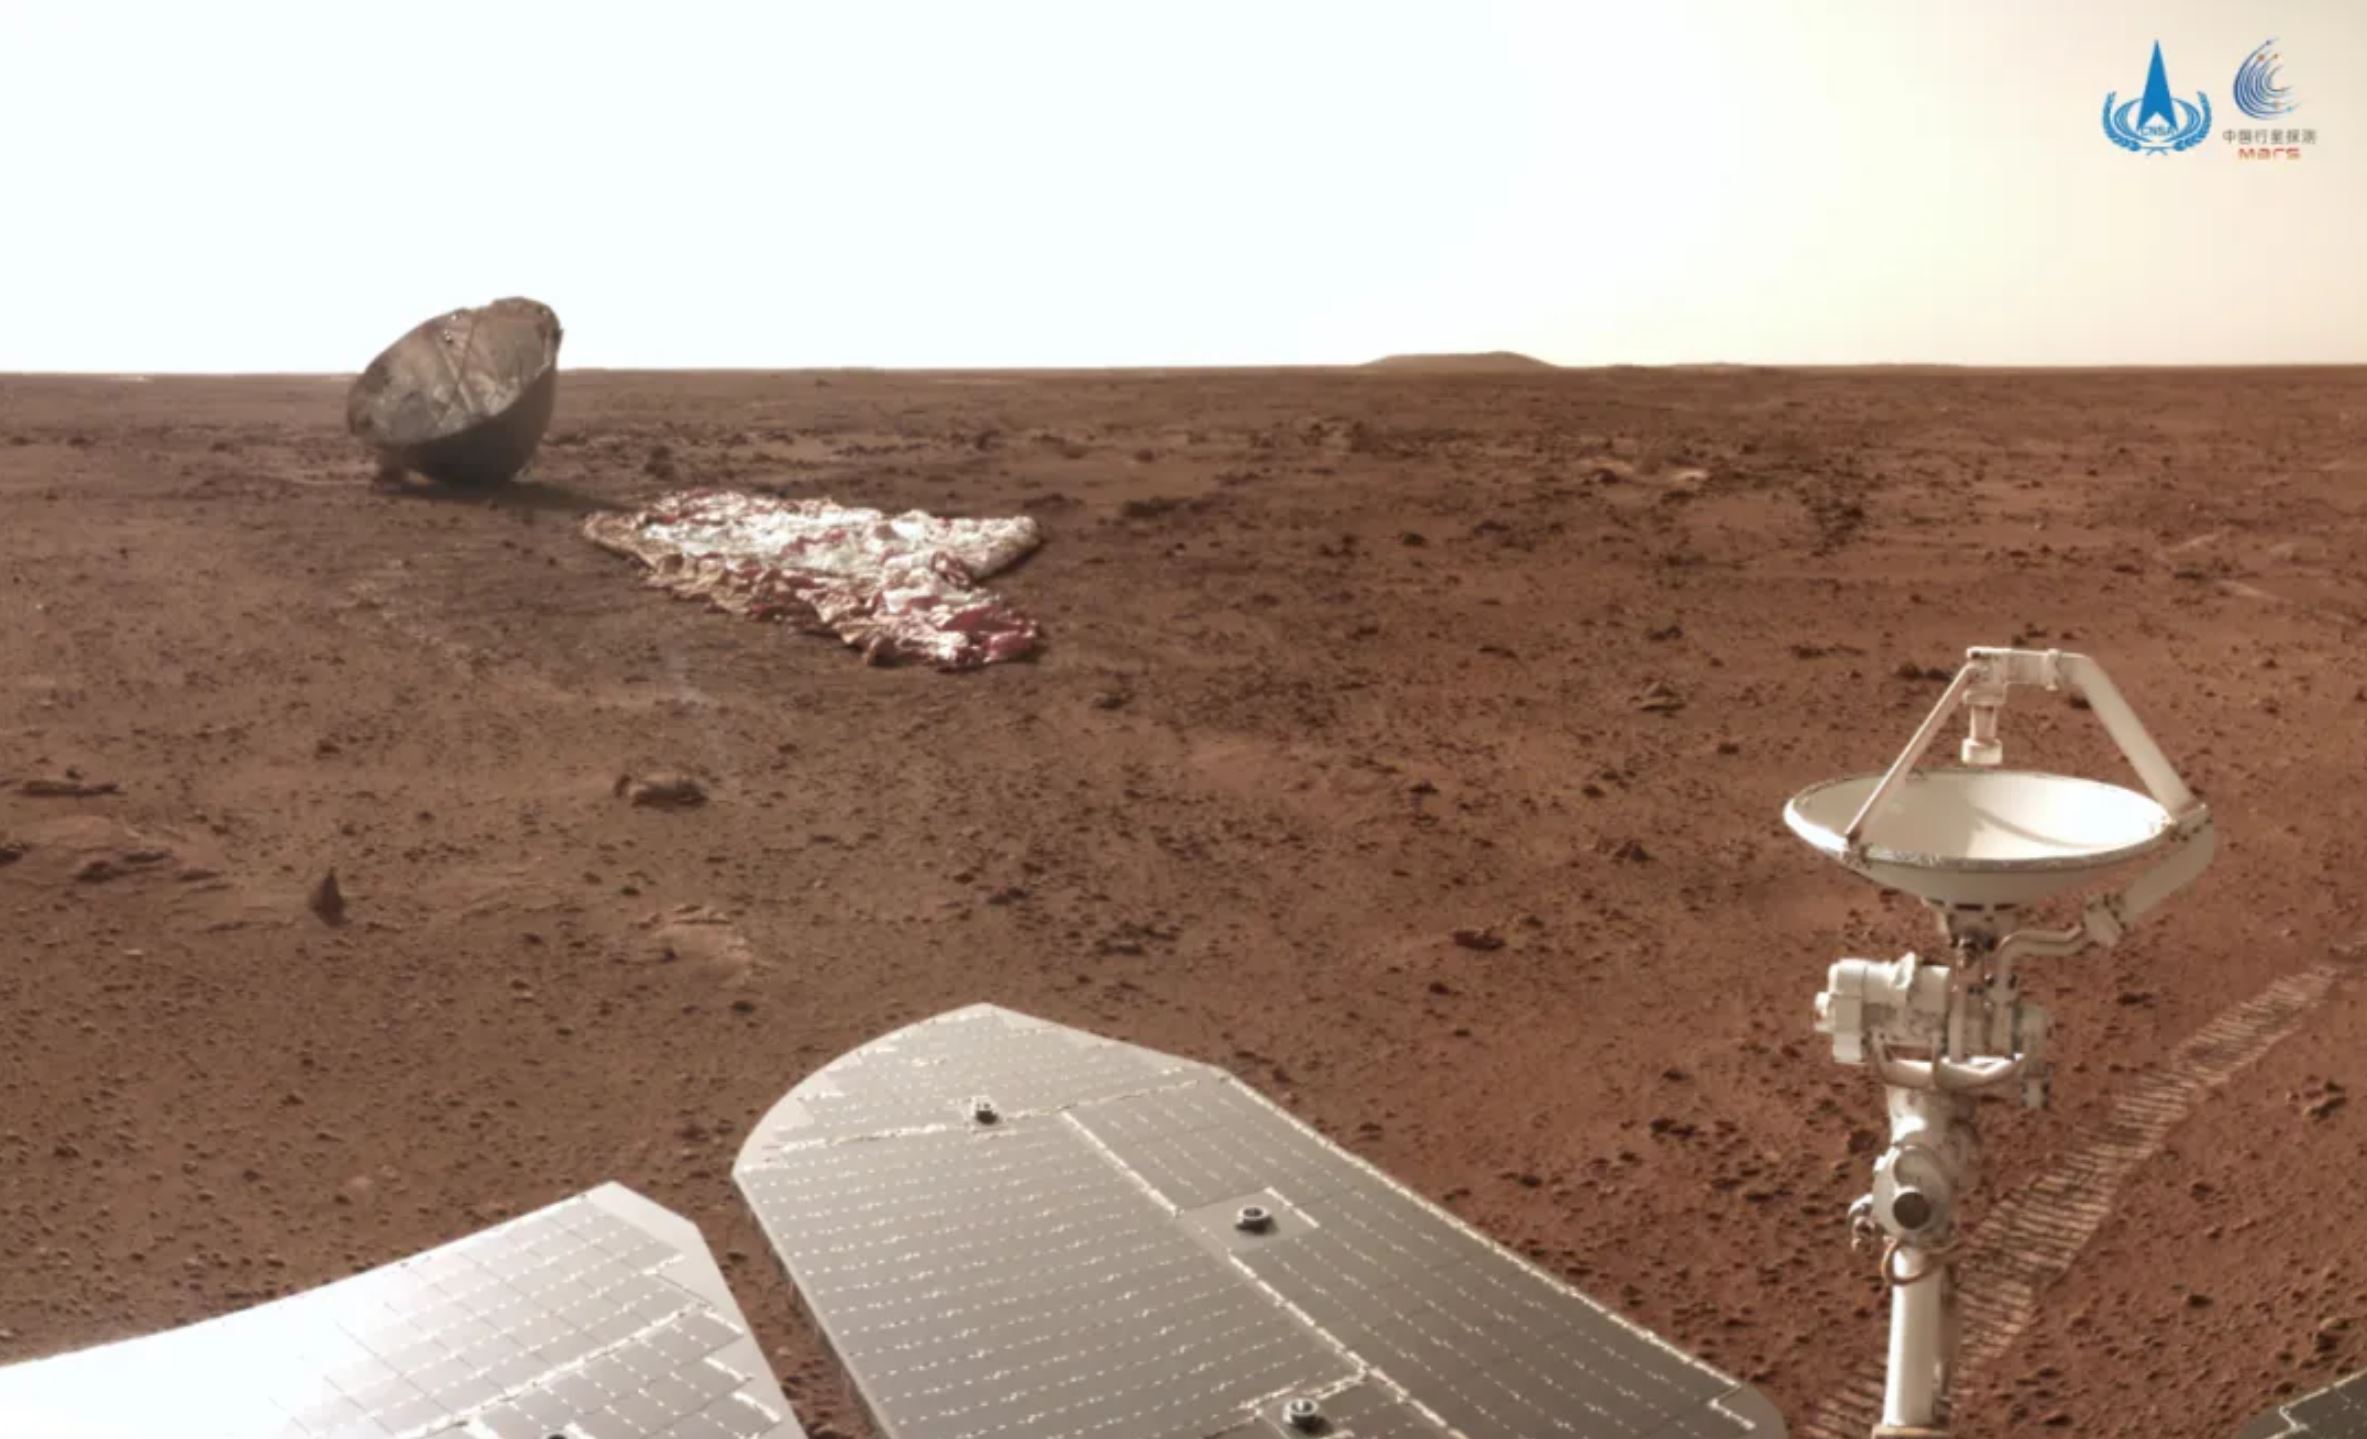 Kina kan inkludere helikopter i Mars-prøveoppdraget